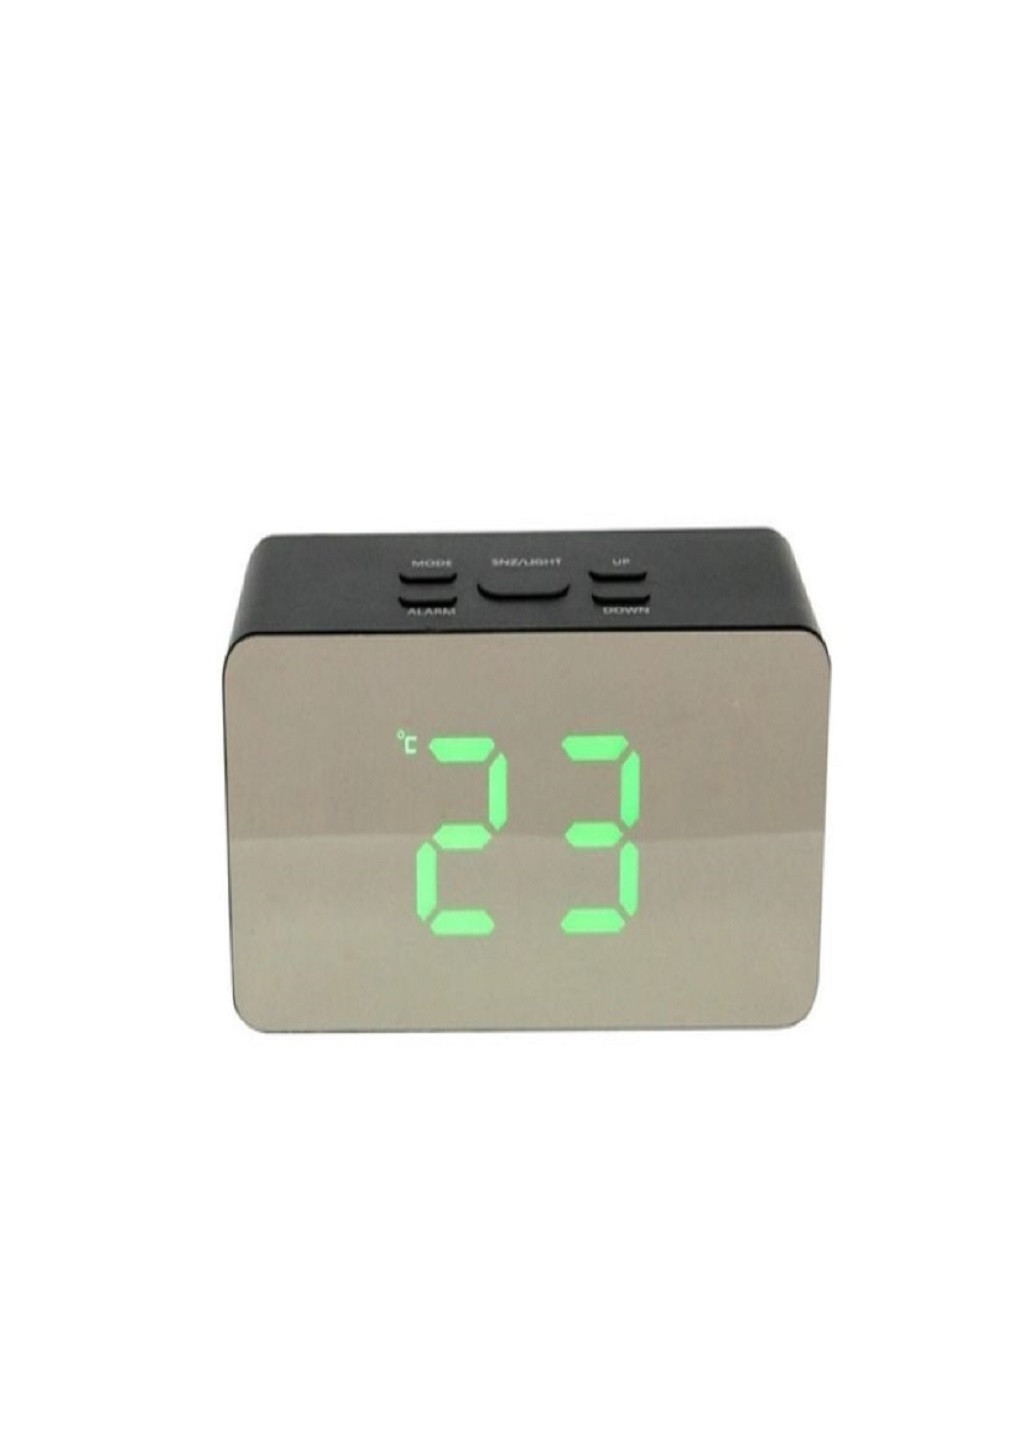 Настольные электронные часы с подсветкой и питанием от сети 220В или батареек DS-3658 Черный корпус Зеленая подсветка VTech (263360253)